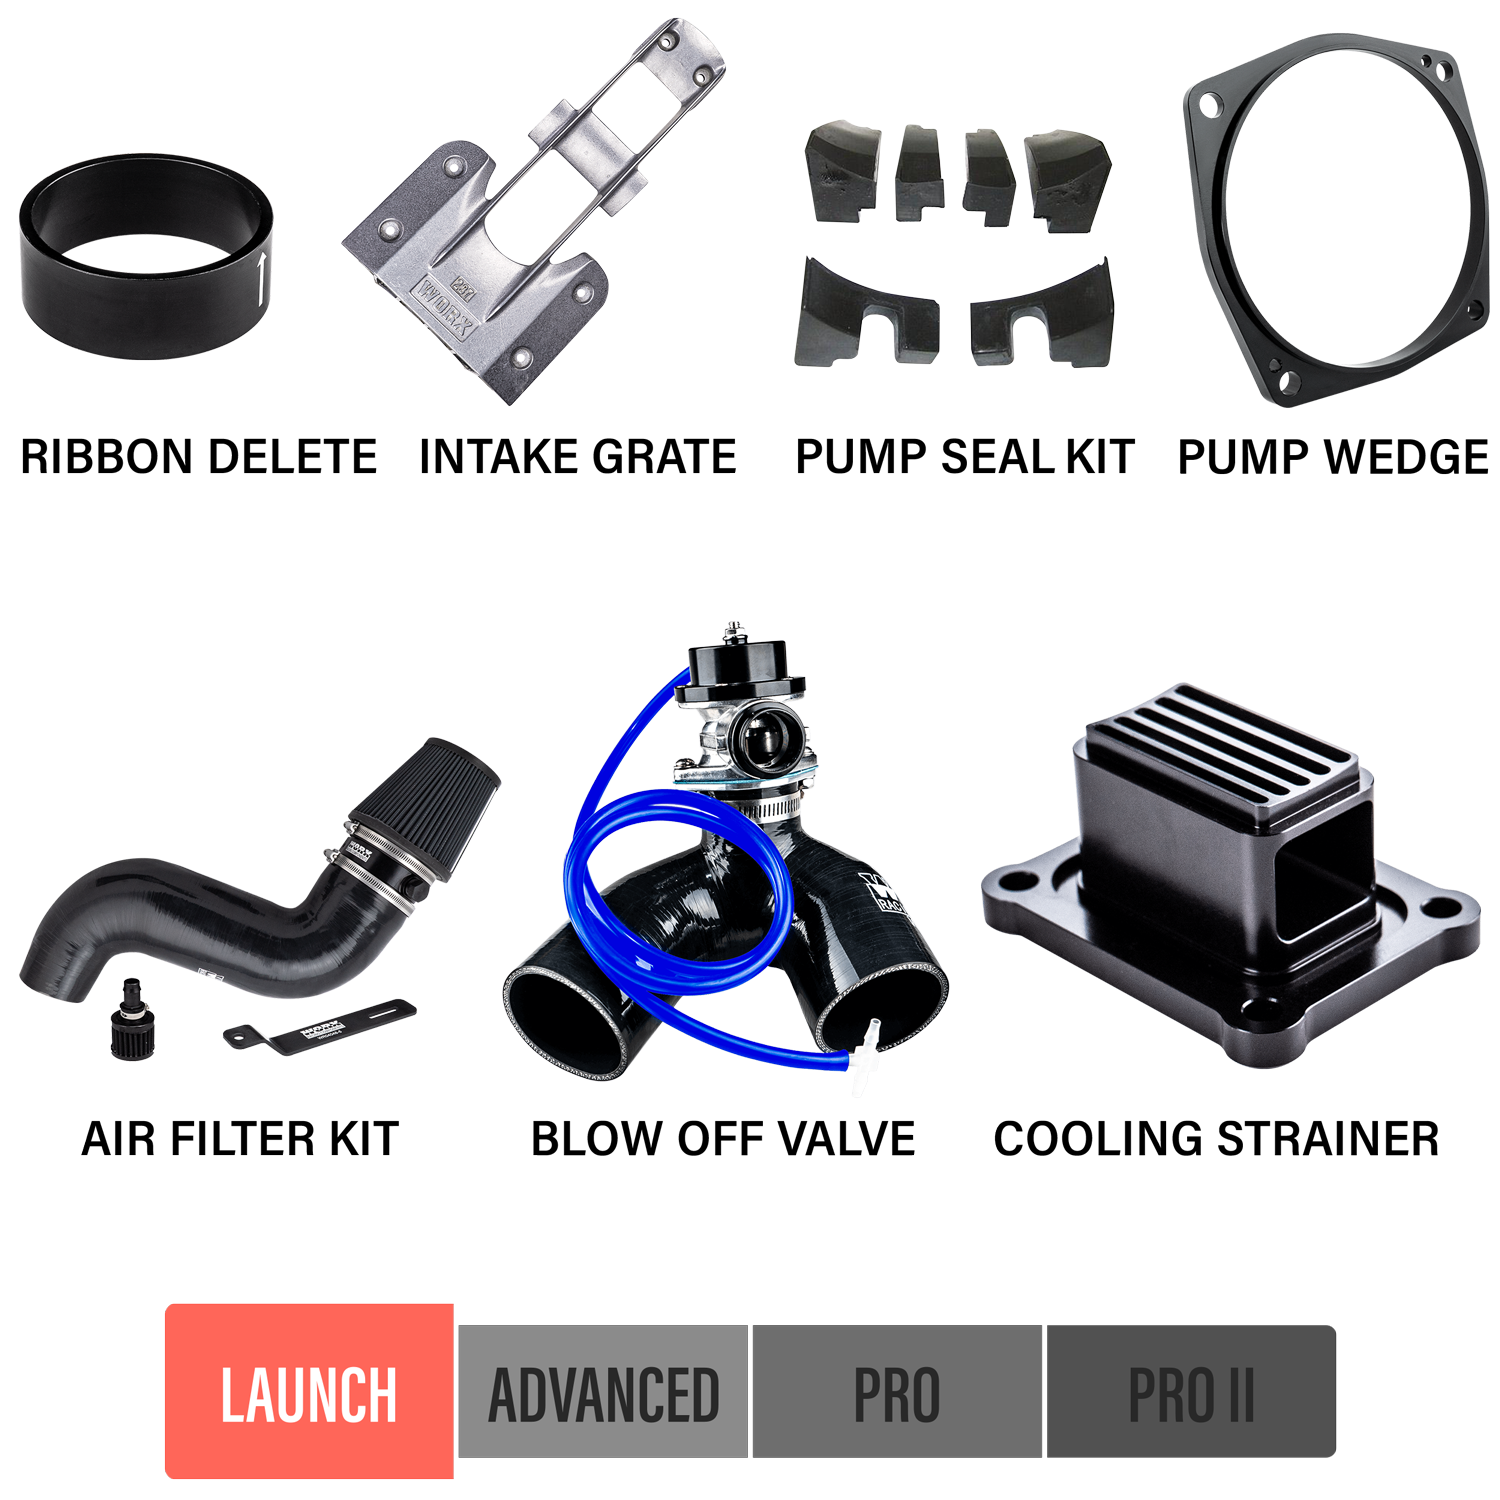 2014-2017 Yamaha FX SVHO Upgrade Kits